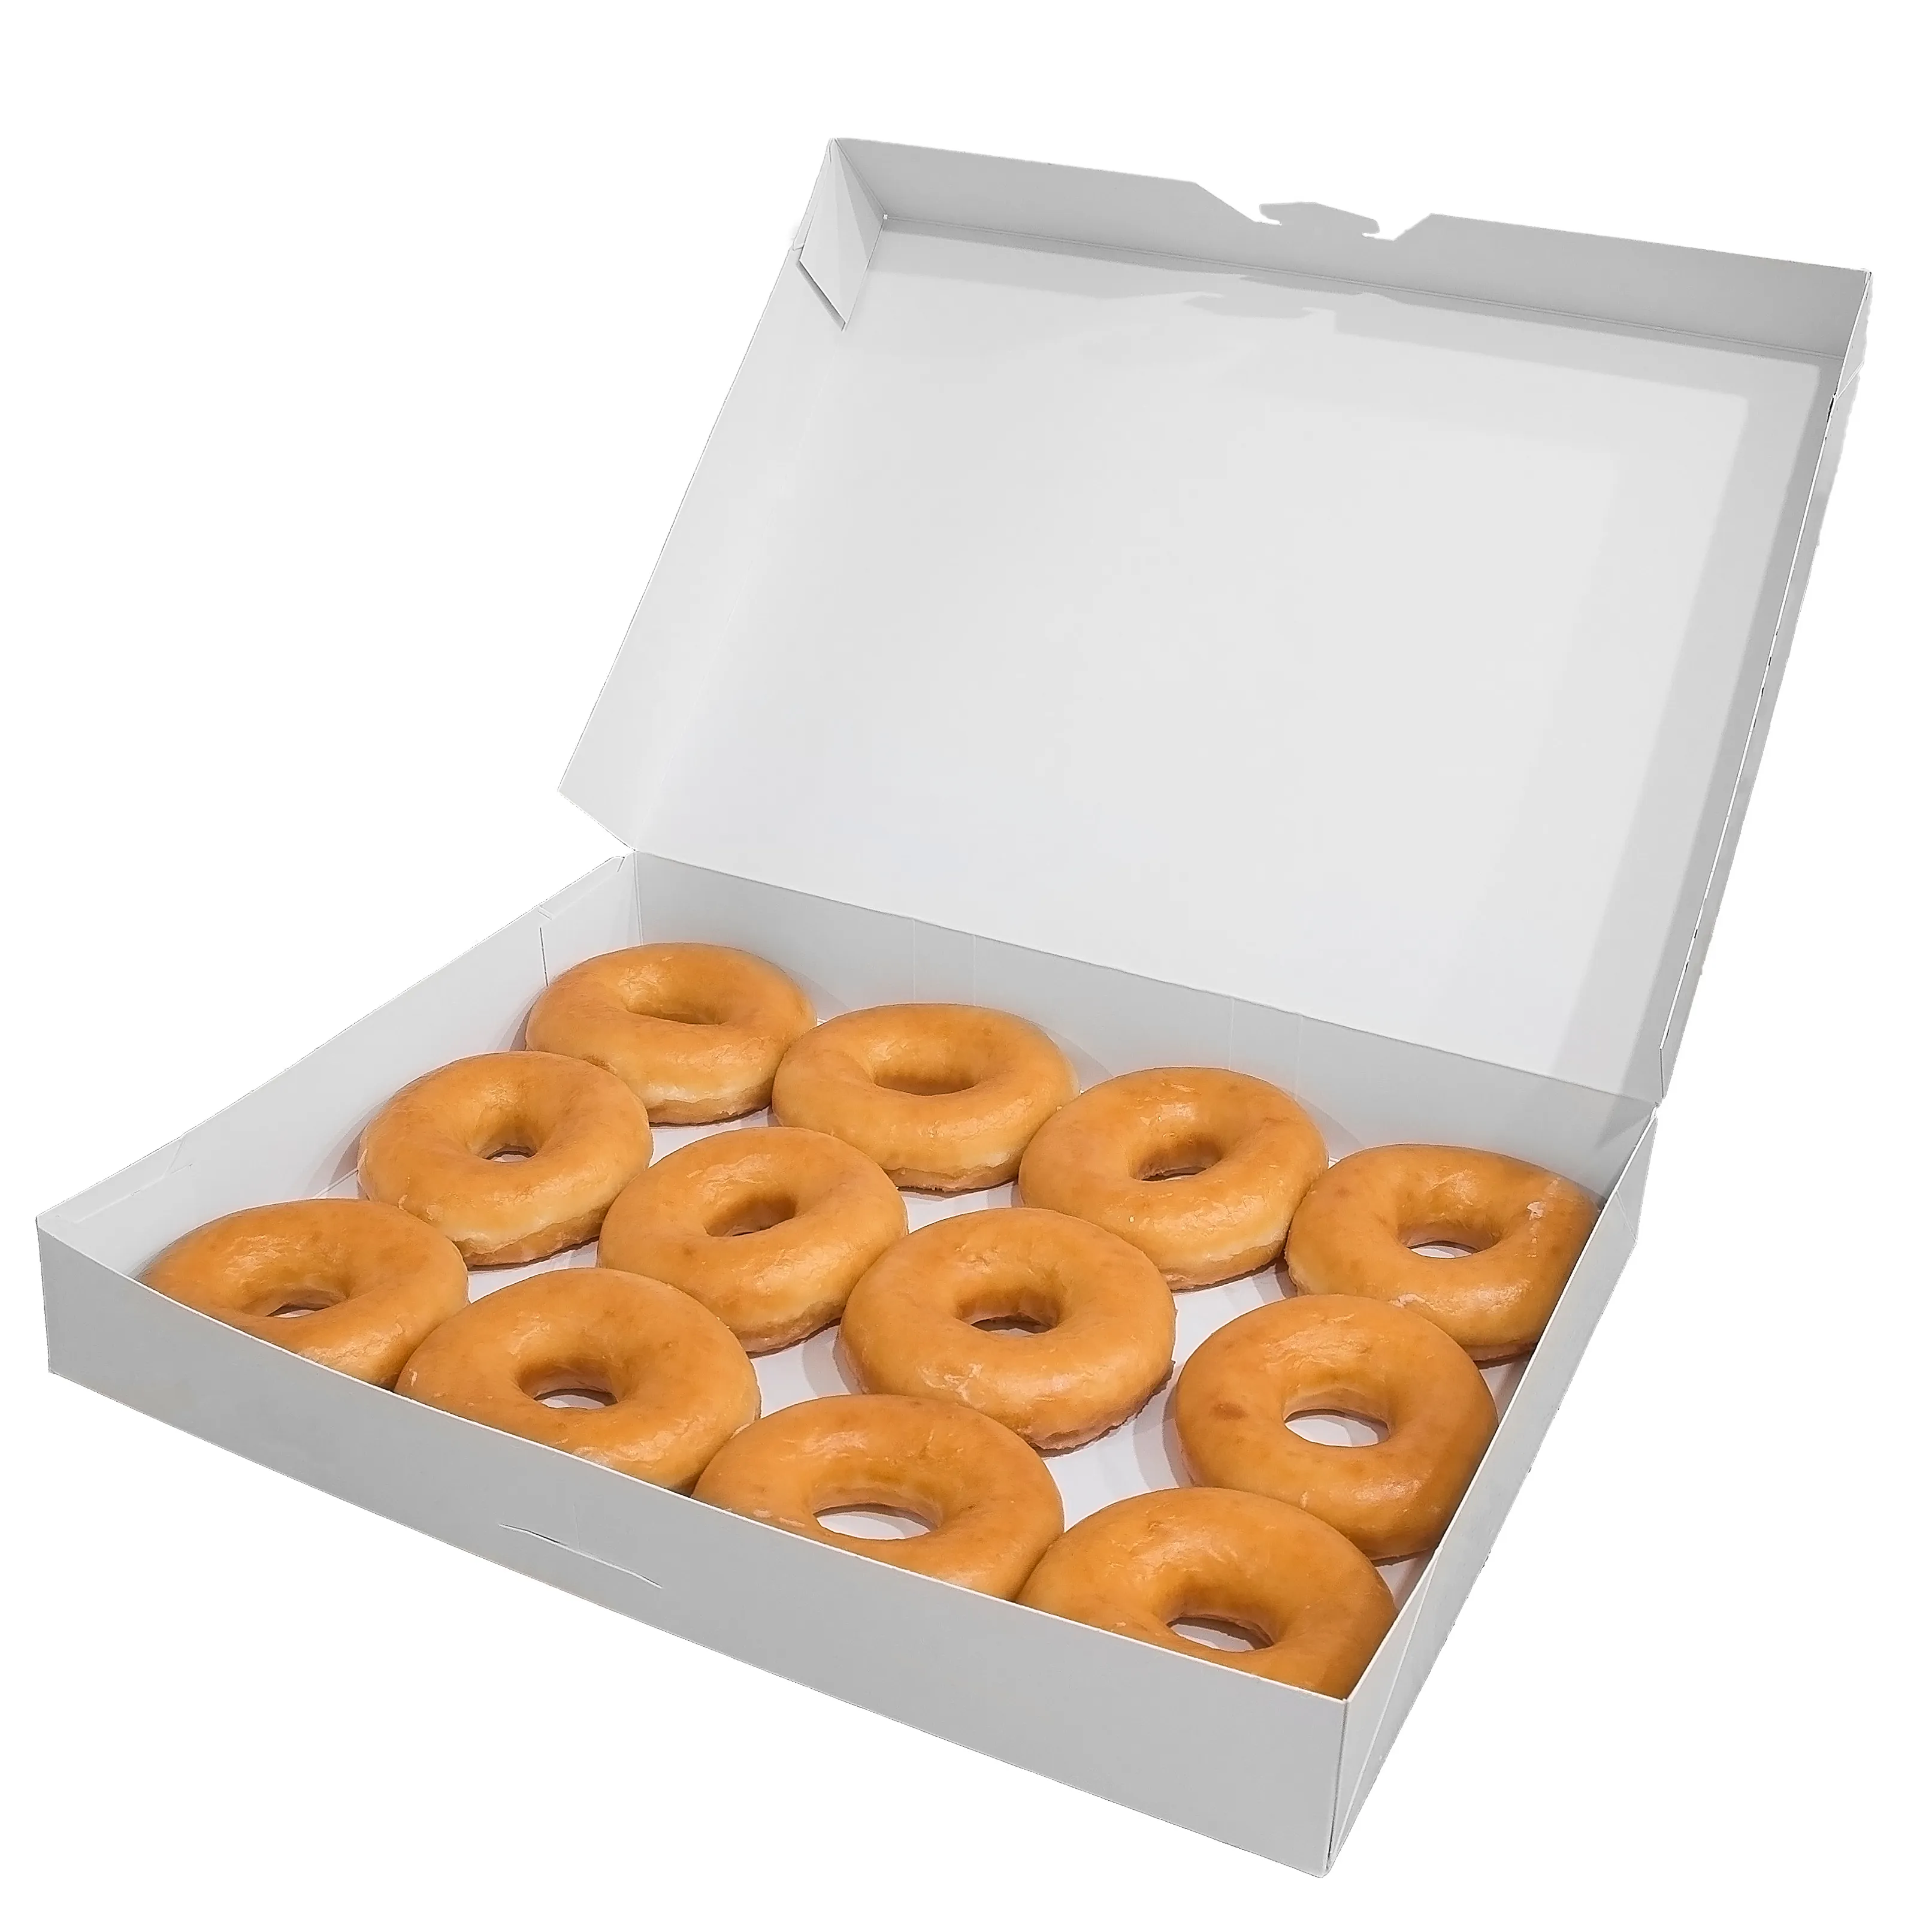 주문 마분지 상자 도넛을 위한 물결 모양 인쇄된 접히는 비행기 종이 우편함